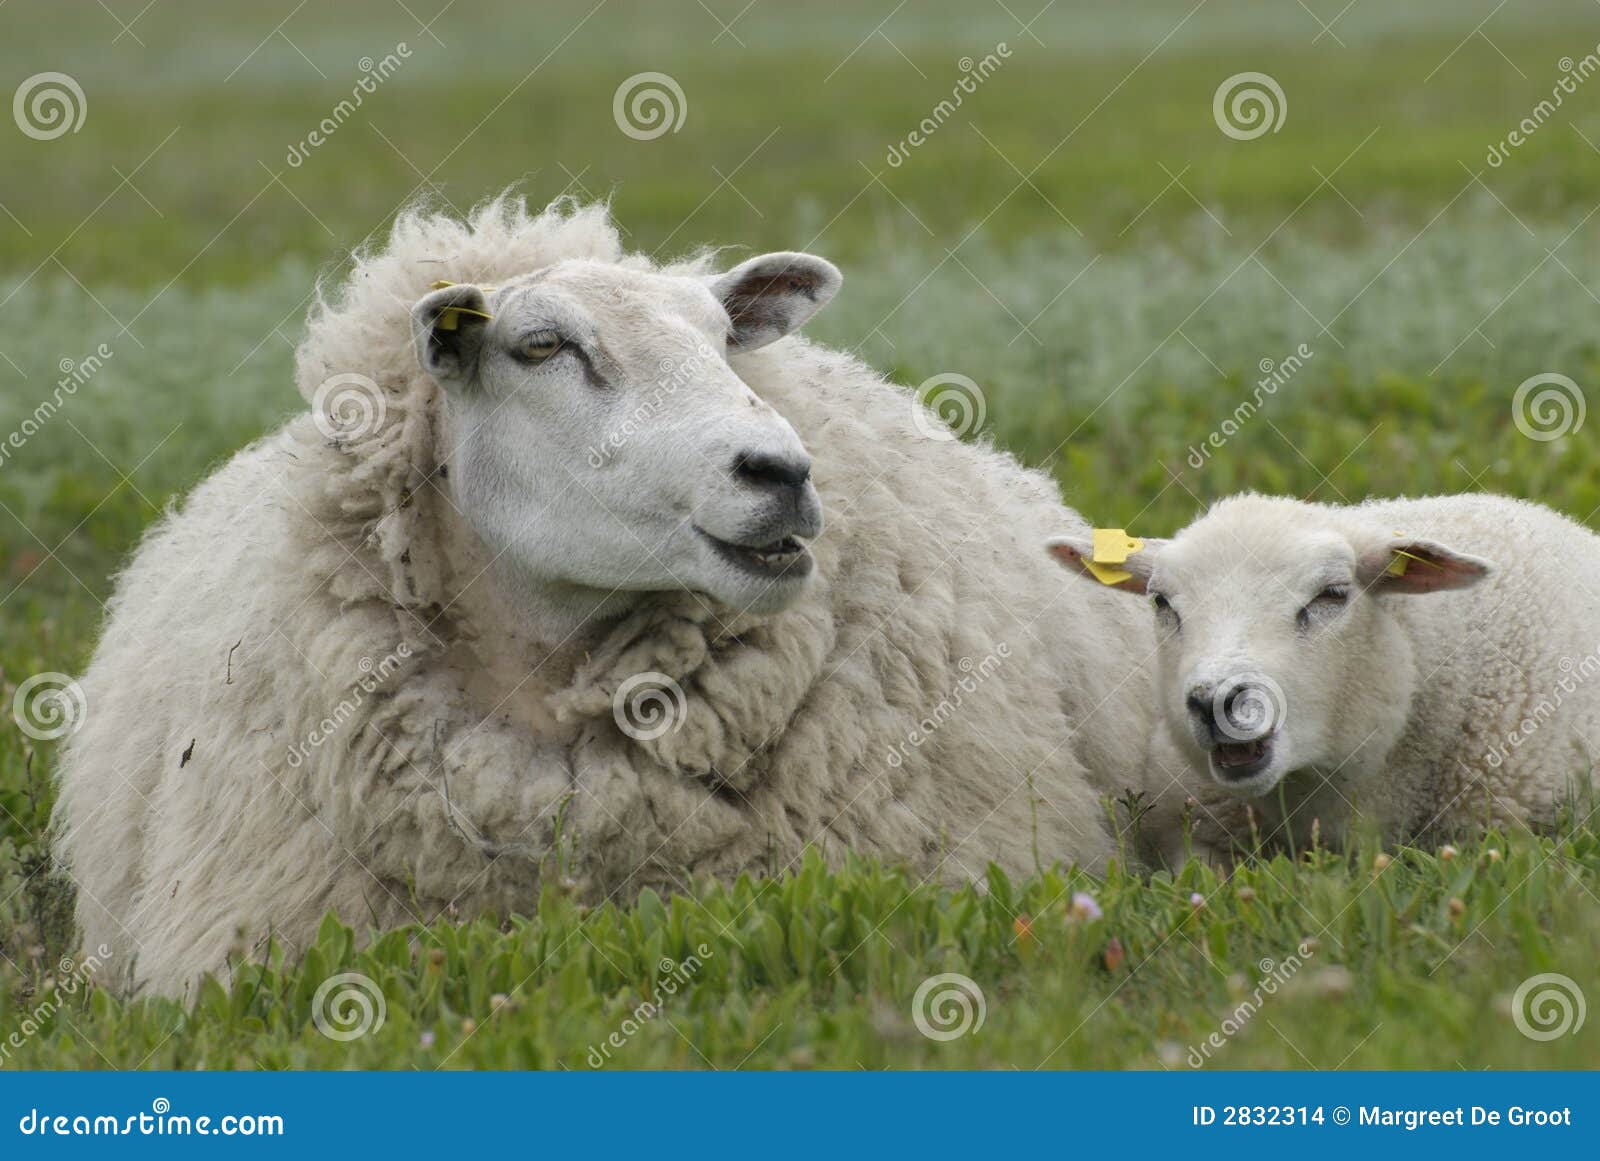 农场农田中的羊公羊母羊高清摄影大图-千库网